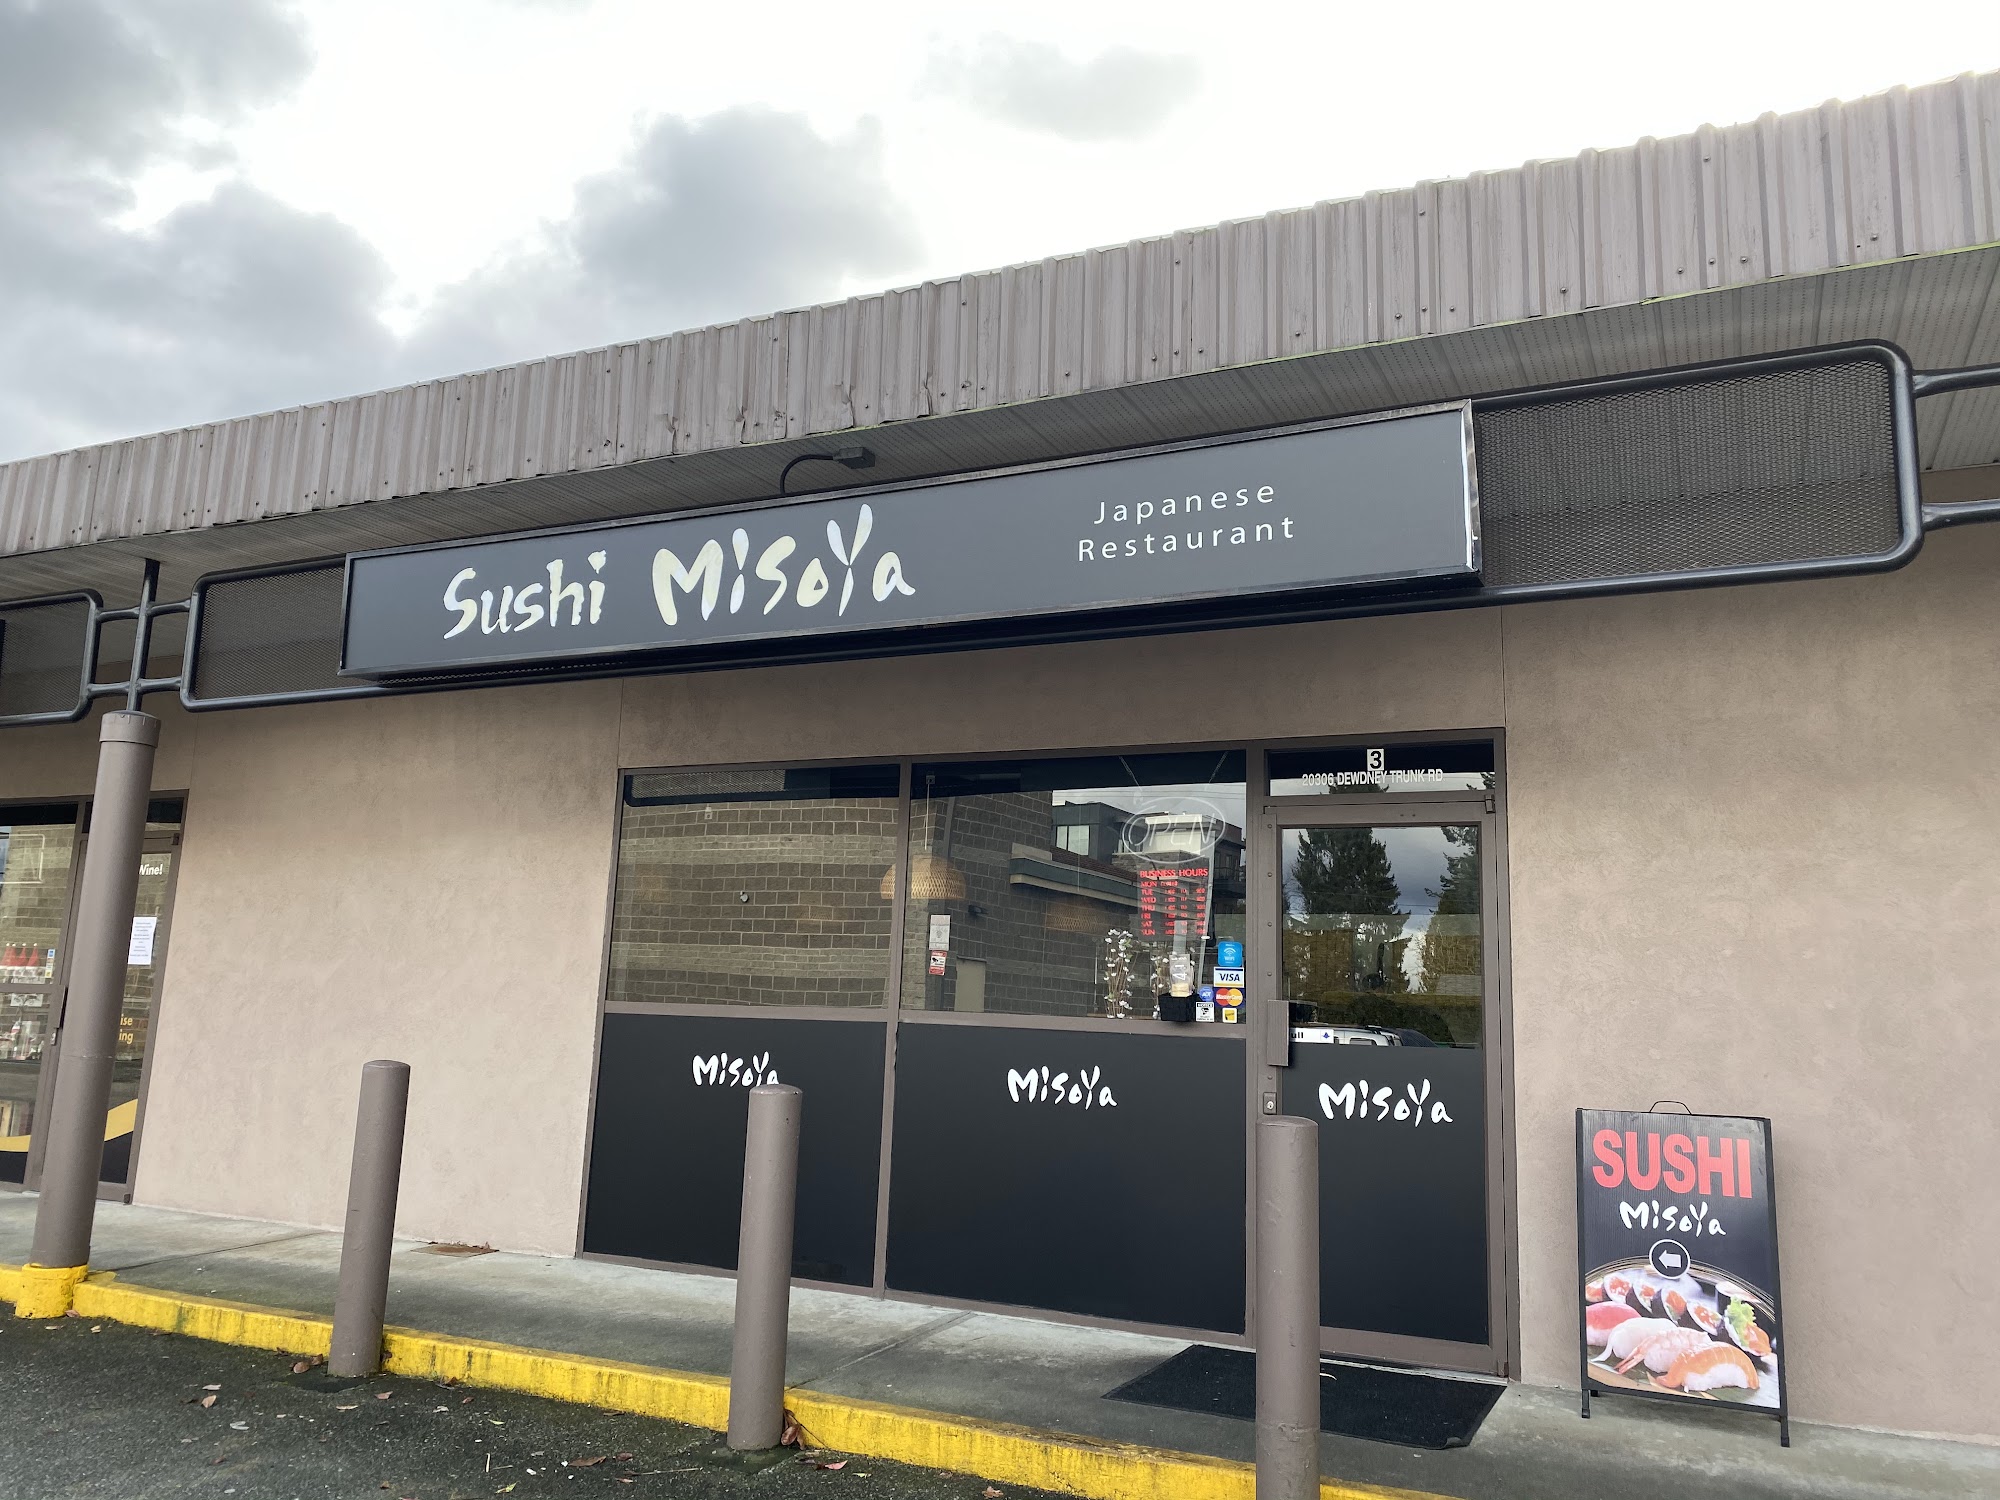 Sushi Misoya